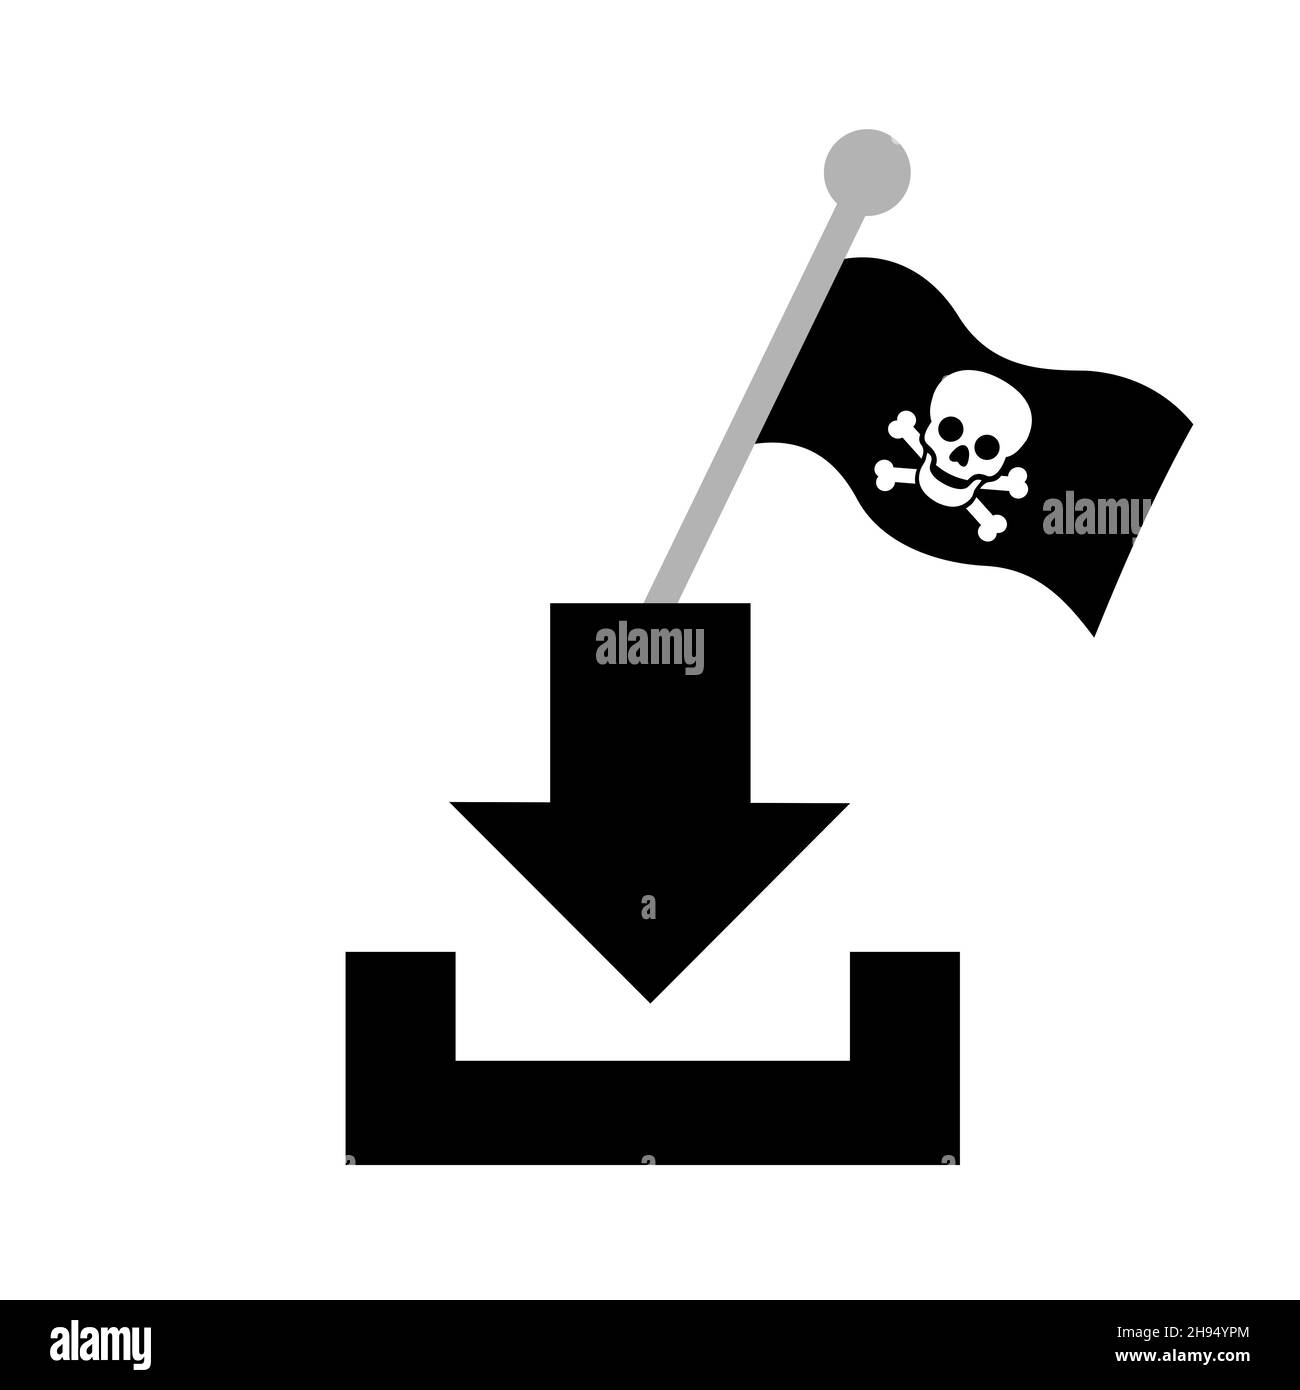 Descarga y piratería - Descarga ilegal y criminal de archivos y datos. Icono, signo, símbolo y pictograma. Ilustración vectorial aislada sobre blanco. Foto de stock